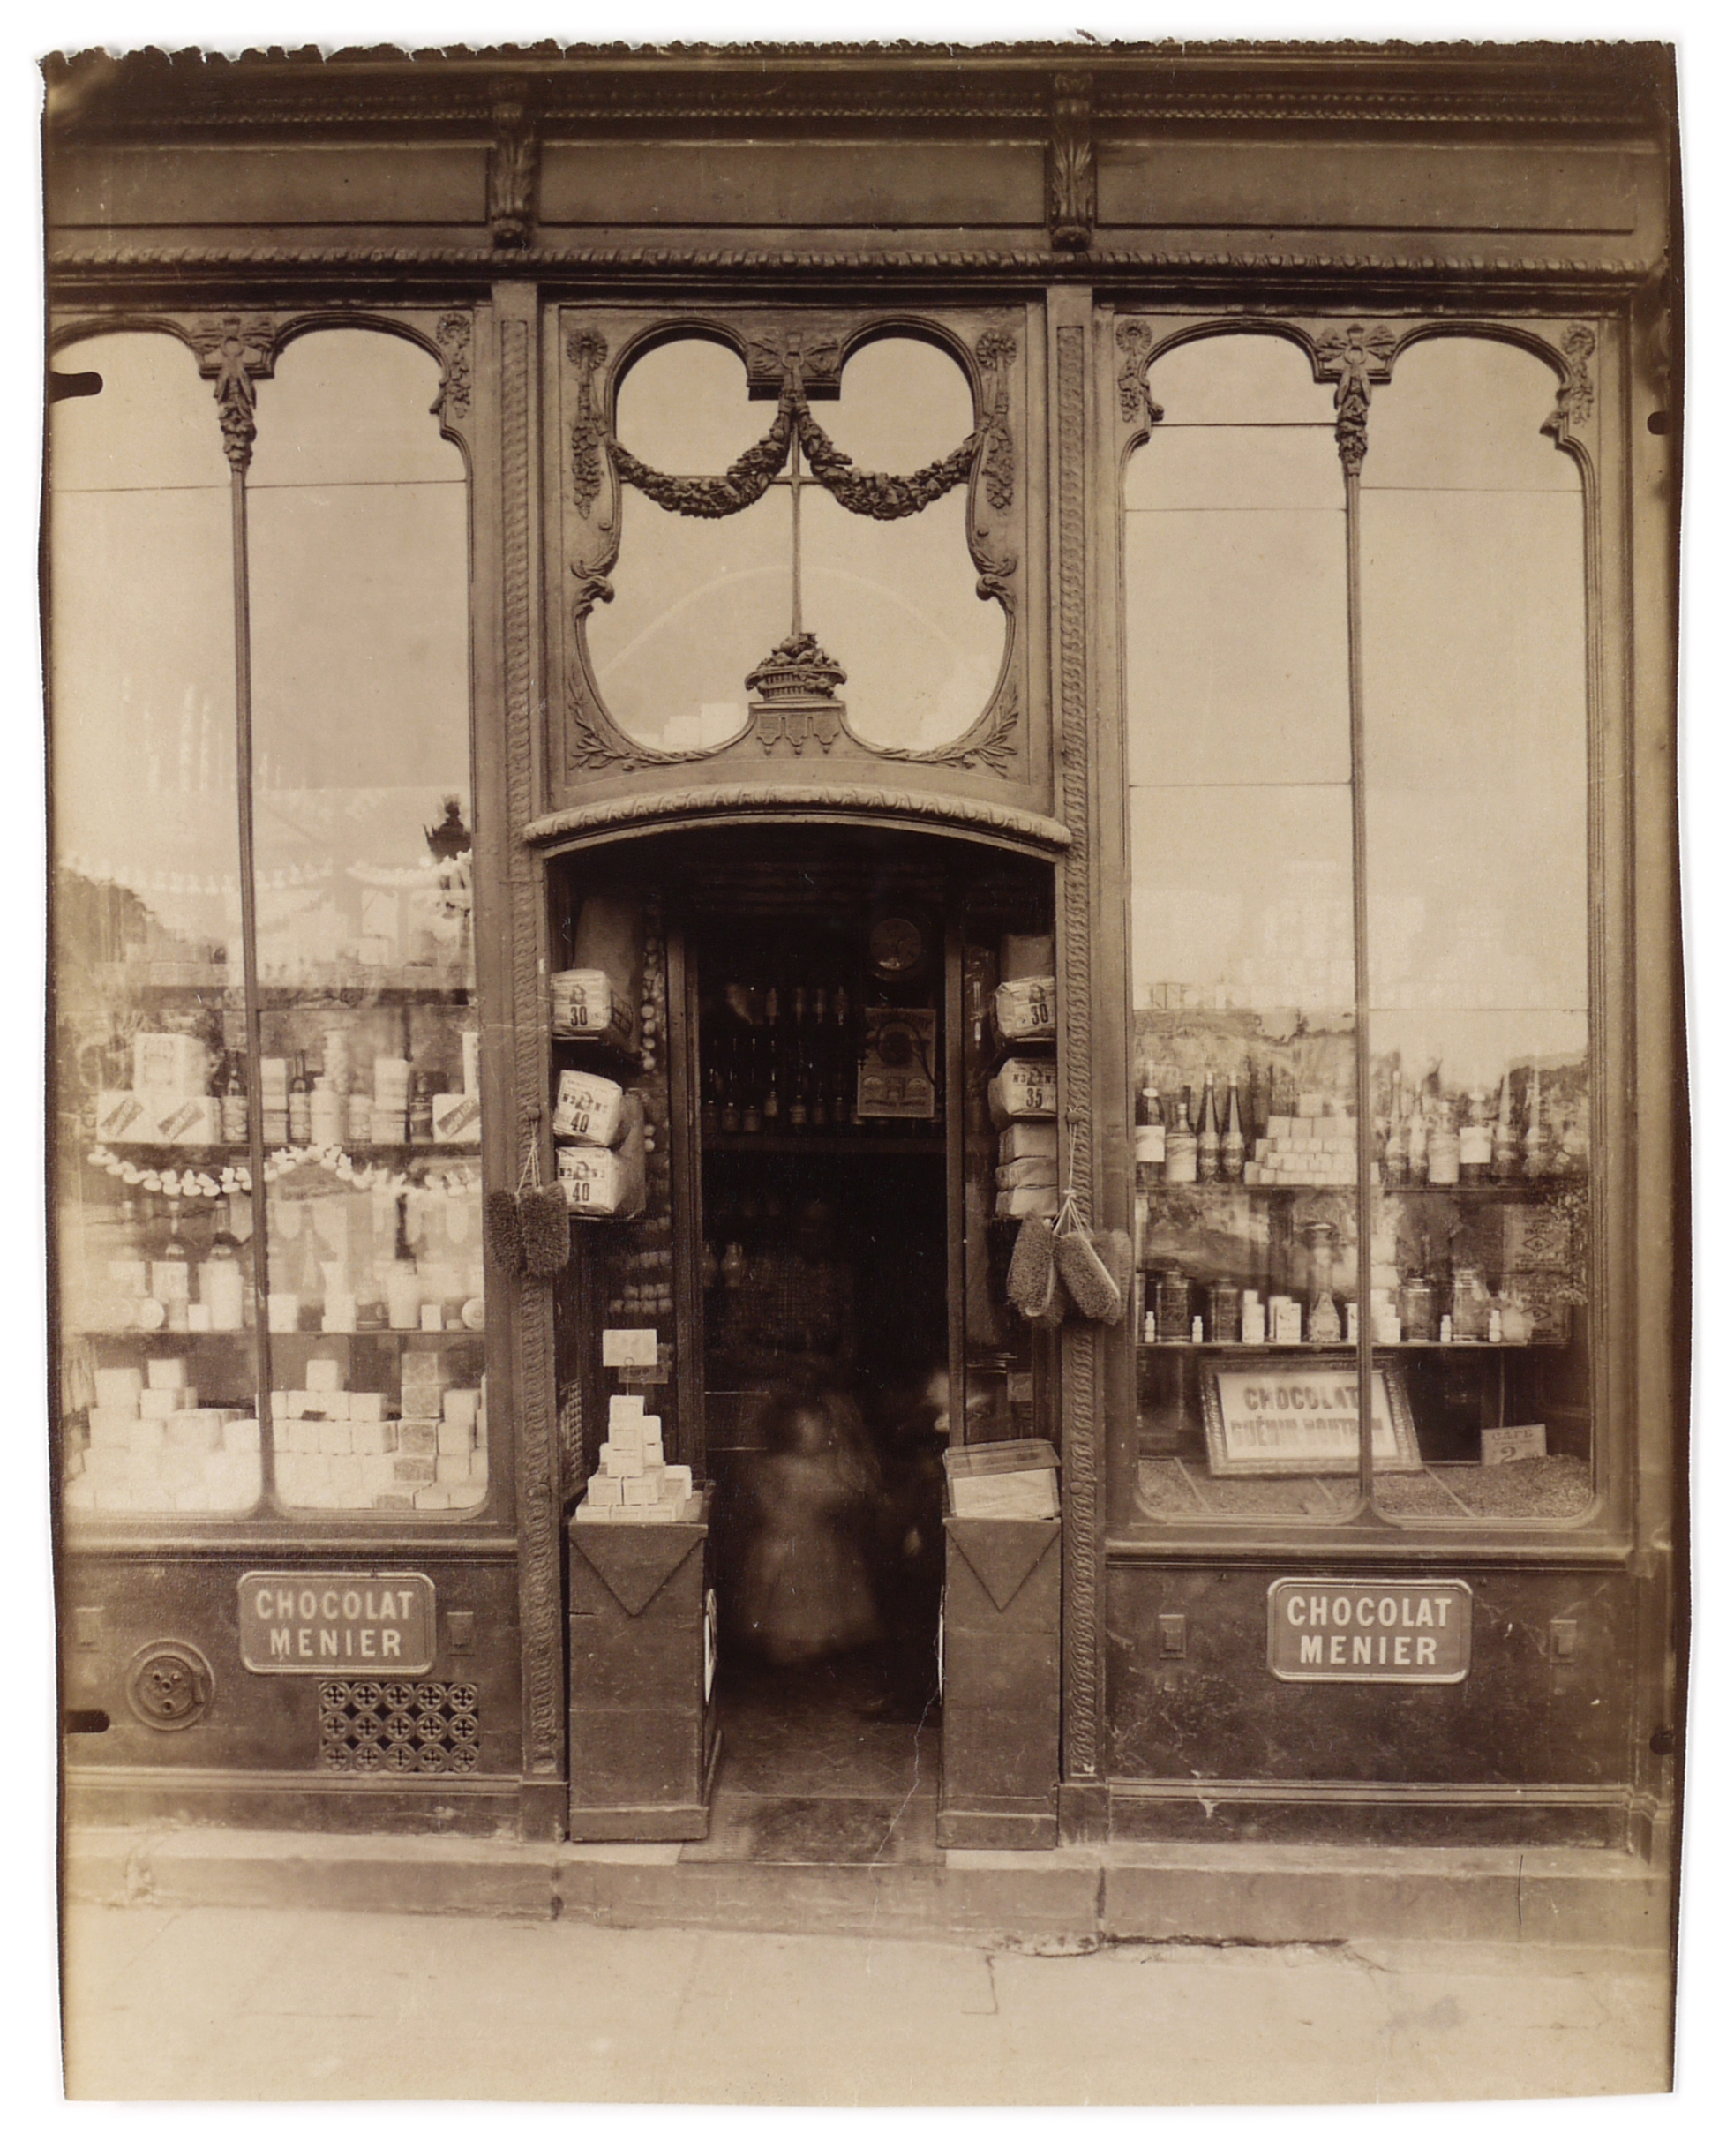 La Boutique Louis XVI, Île Saint Louis, Paris, 1898